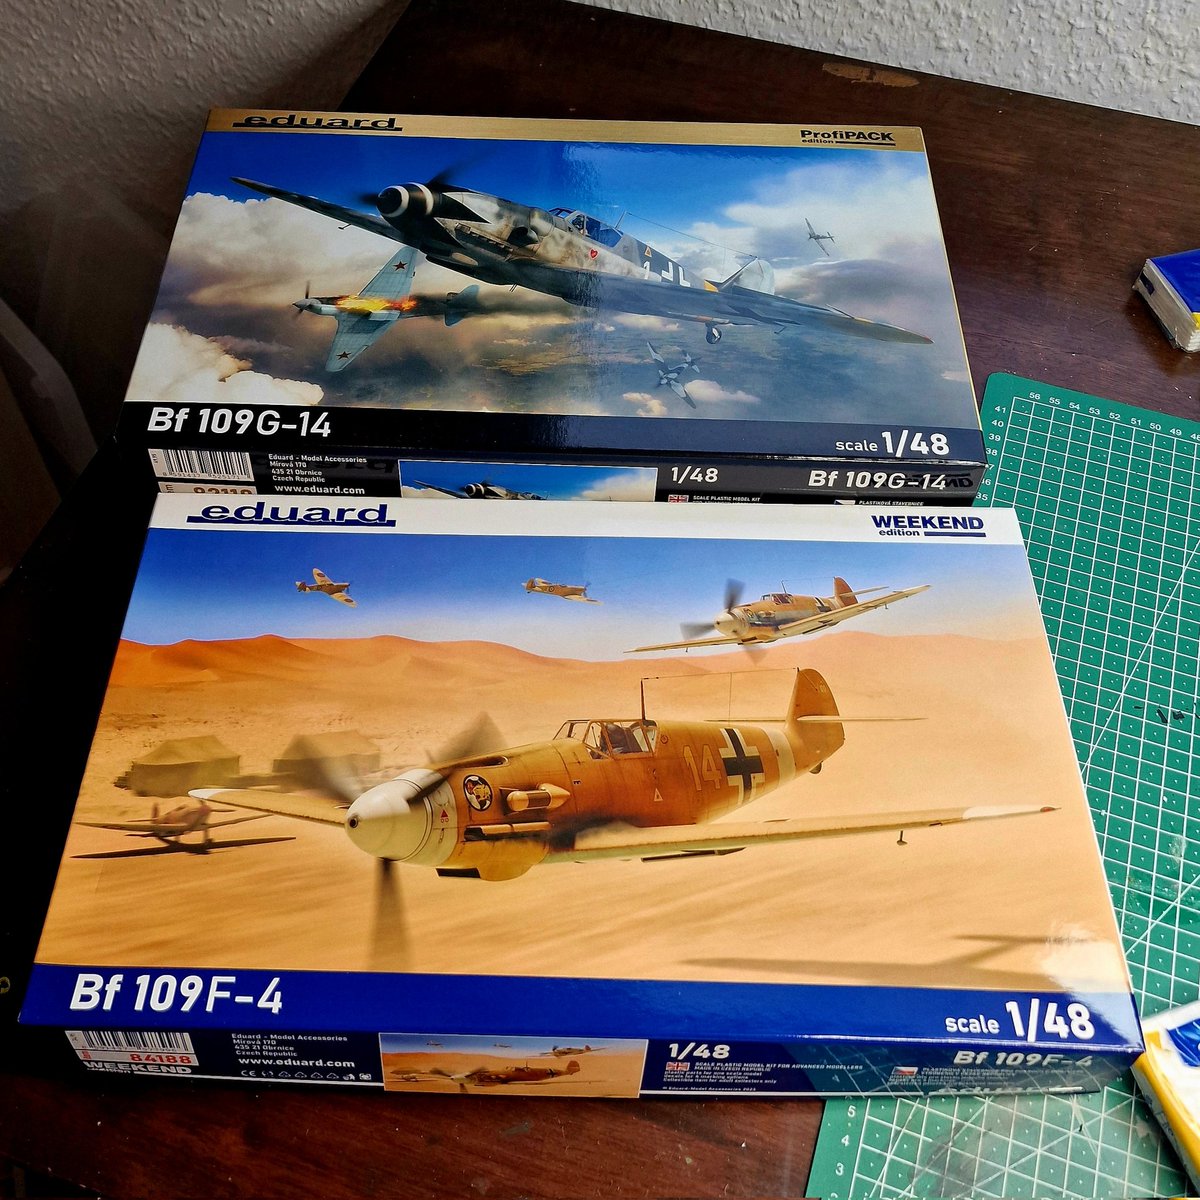 Nach dem Flugzeug Doppel aus Der Englische Patient versuche ich das gleich noch einmal. Dieses Mal mit der Bf 109 im Doppelpack (eine Gustav und eine Friedrich).

#modellbau #modellbauer #scalemodel #scalemodeling #diorama #messerschmidt